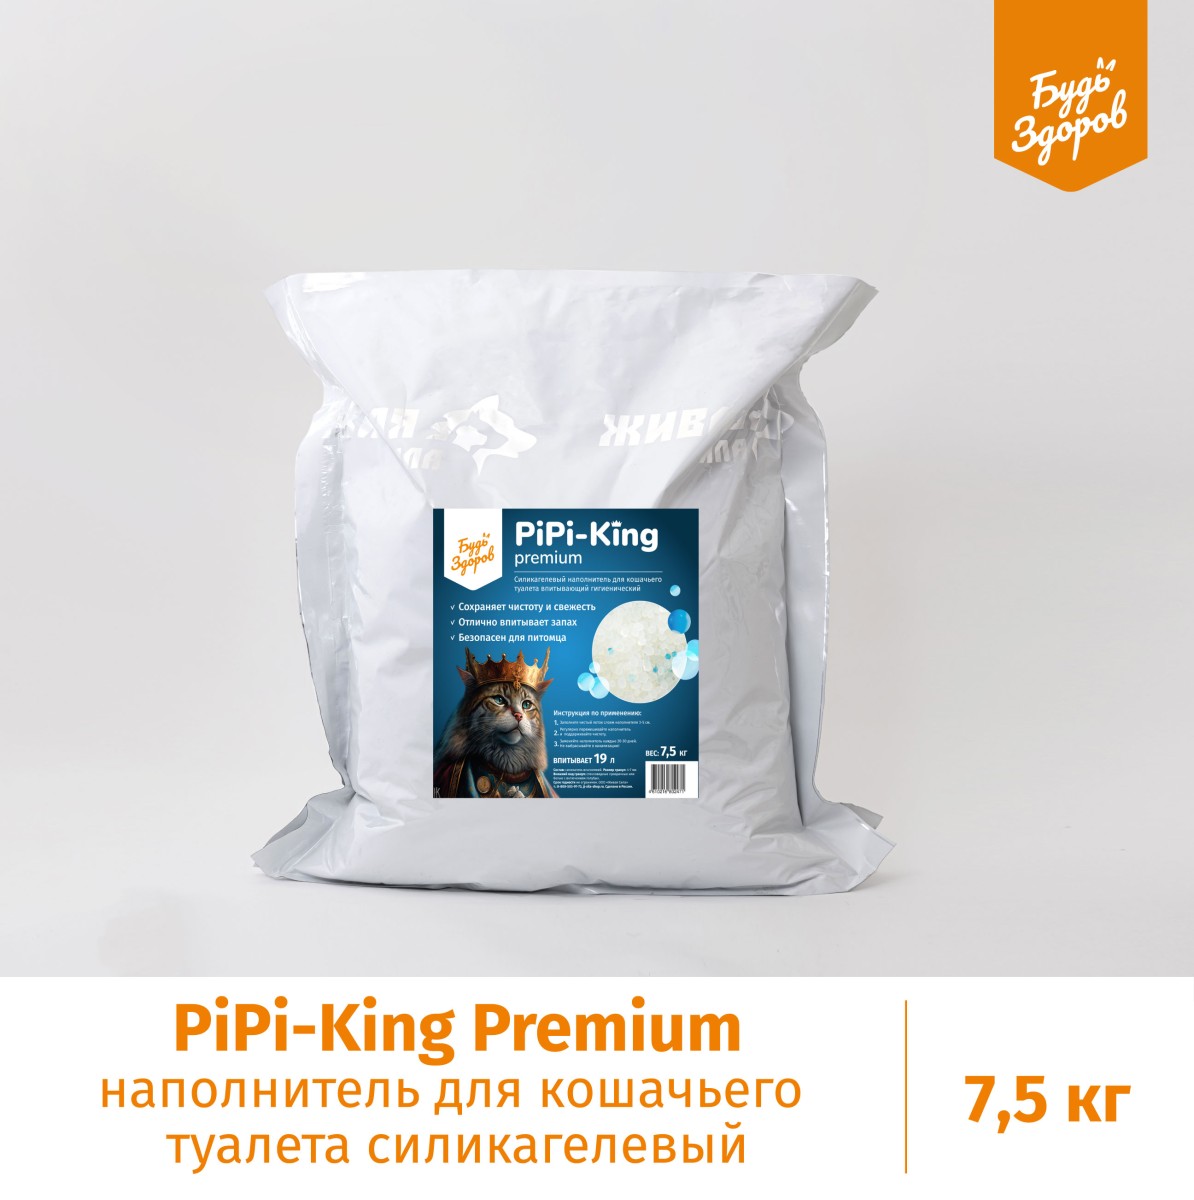 PIPI-King Premium наполнитель для кошачьего туалета силикагелевый 7.5 кг